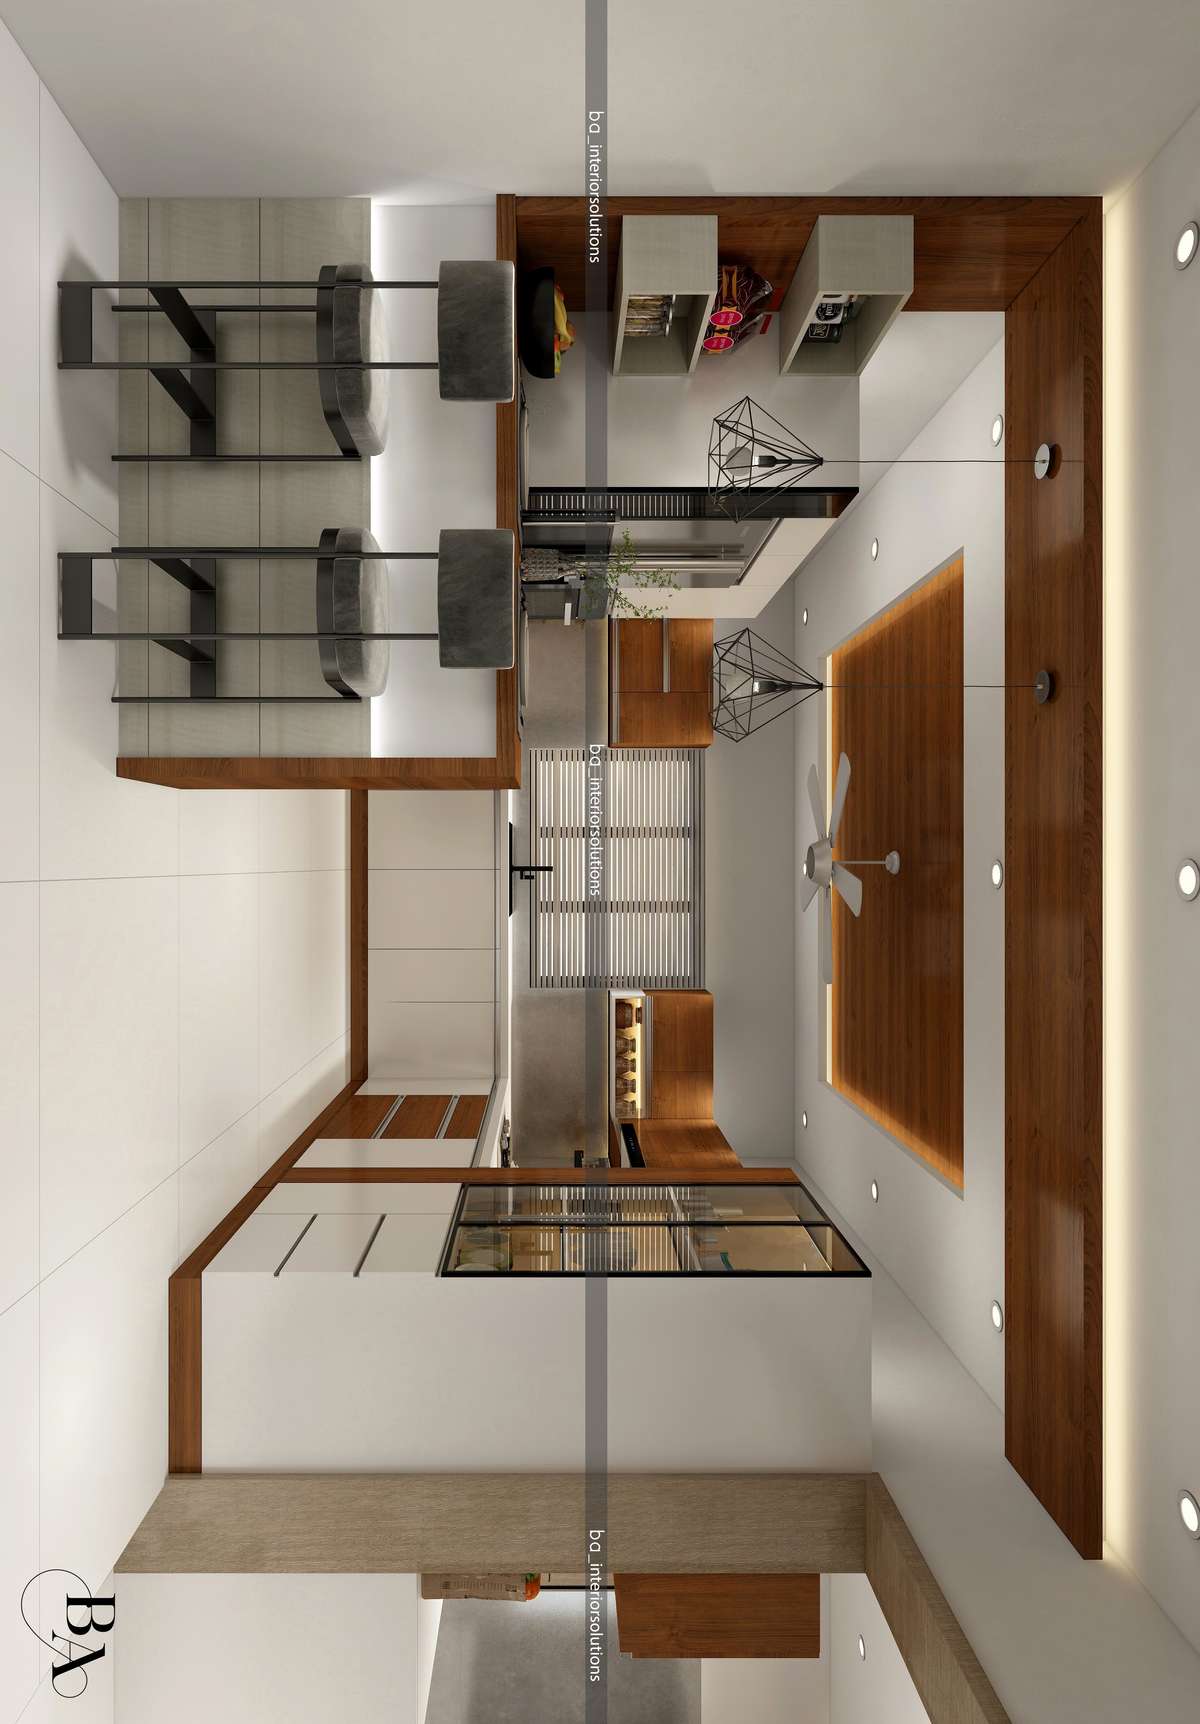 Ceiling, Kitchen, Lighting, Storage Designs by Interior Designer Ibrahim Badusha, Thrissur | Kolo